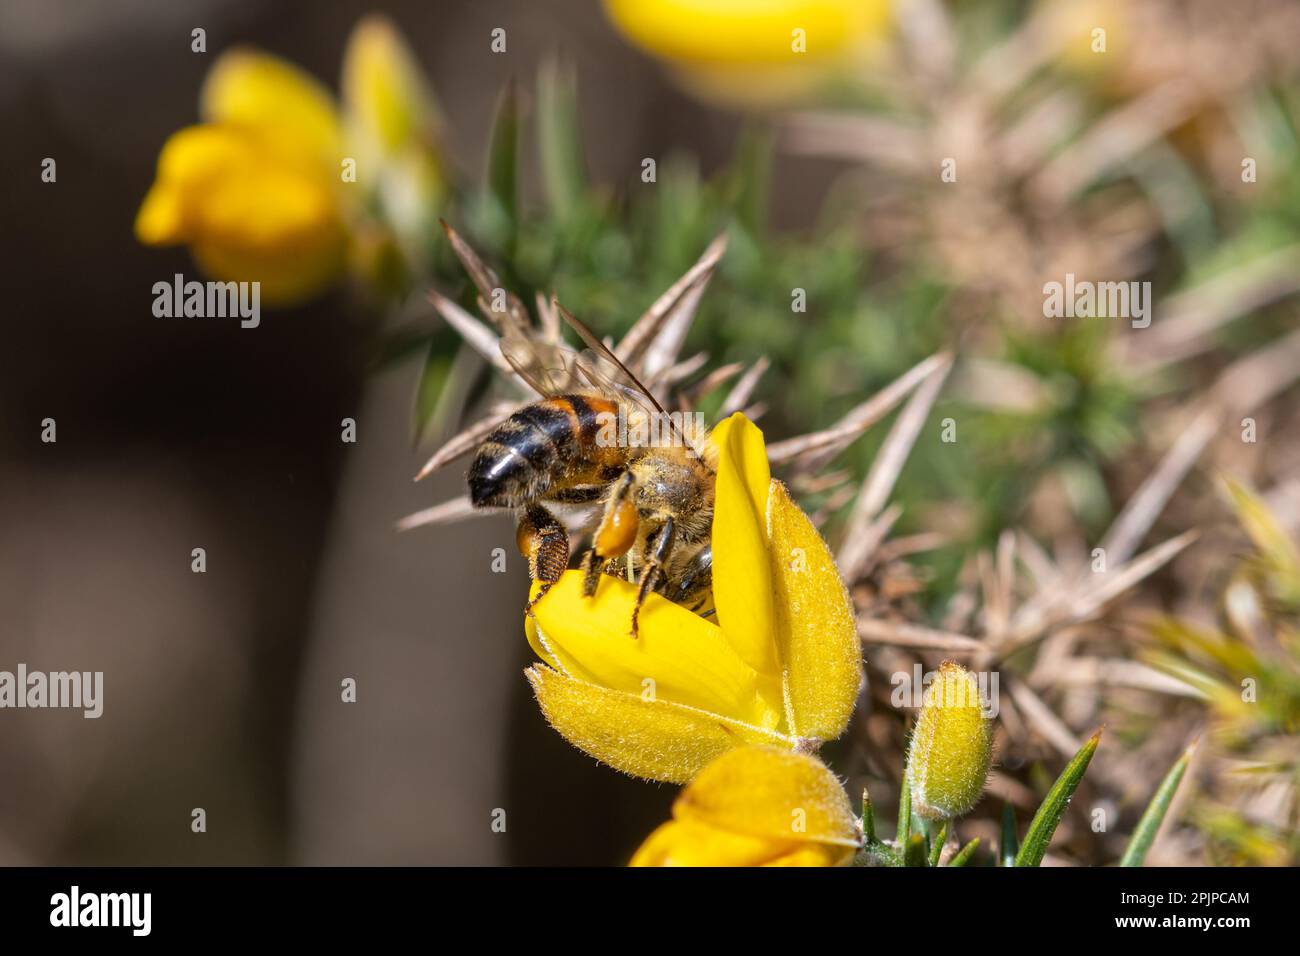 Abeille occidentale (API mellifera, également appelée abeille européenne) collectant le nectar et le pollen des fleurs de gorge au printemps, Surrey, Angleterre, Royaume-Uni Banque D'Images